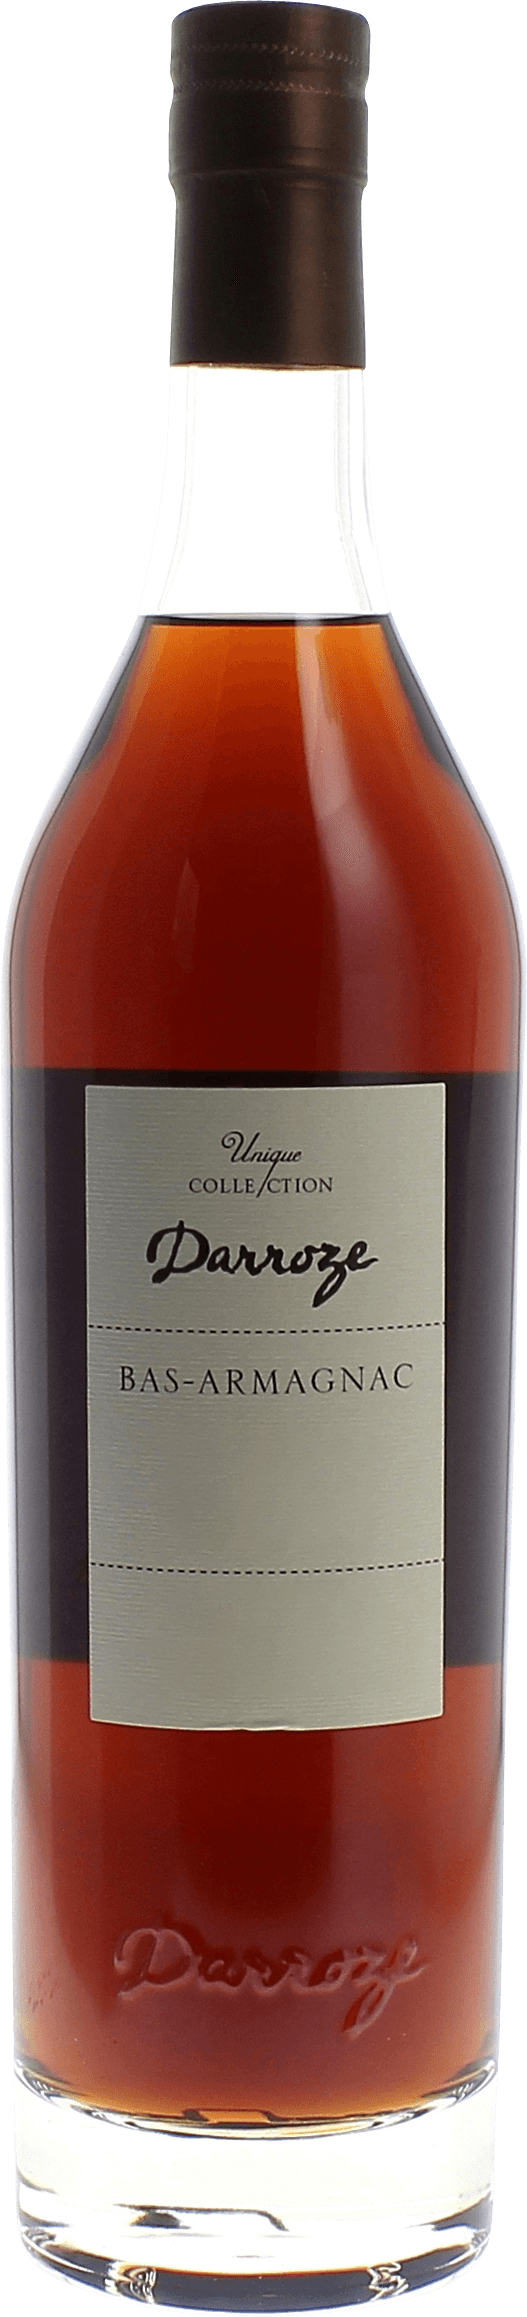 Domaine de gaube 48 1972  Bas Armagnac, DARROZE  Francis Bas Armagnac